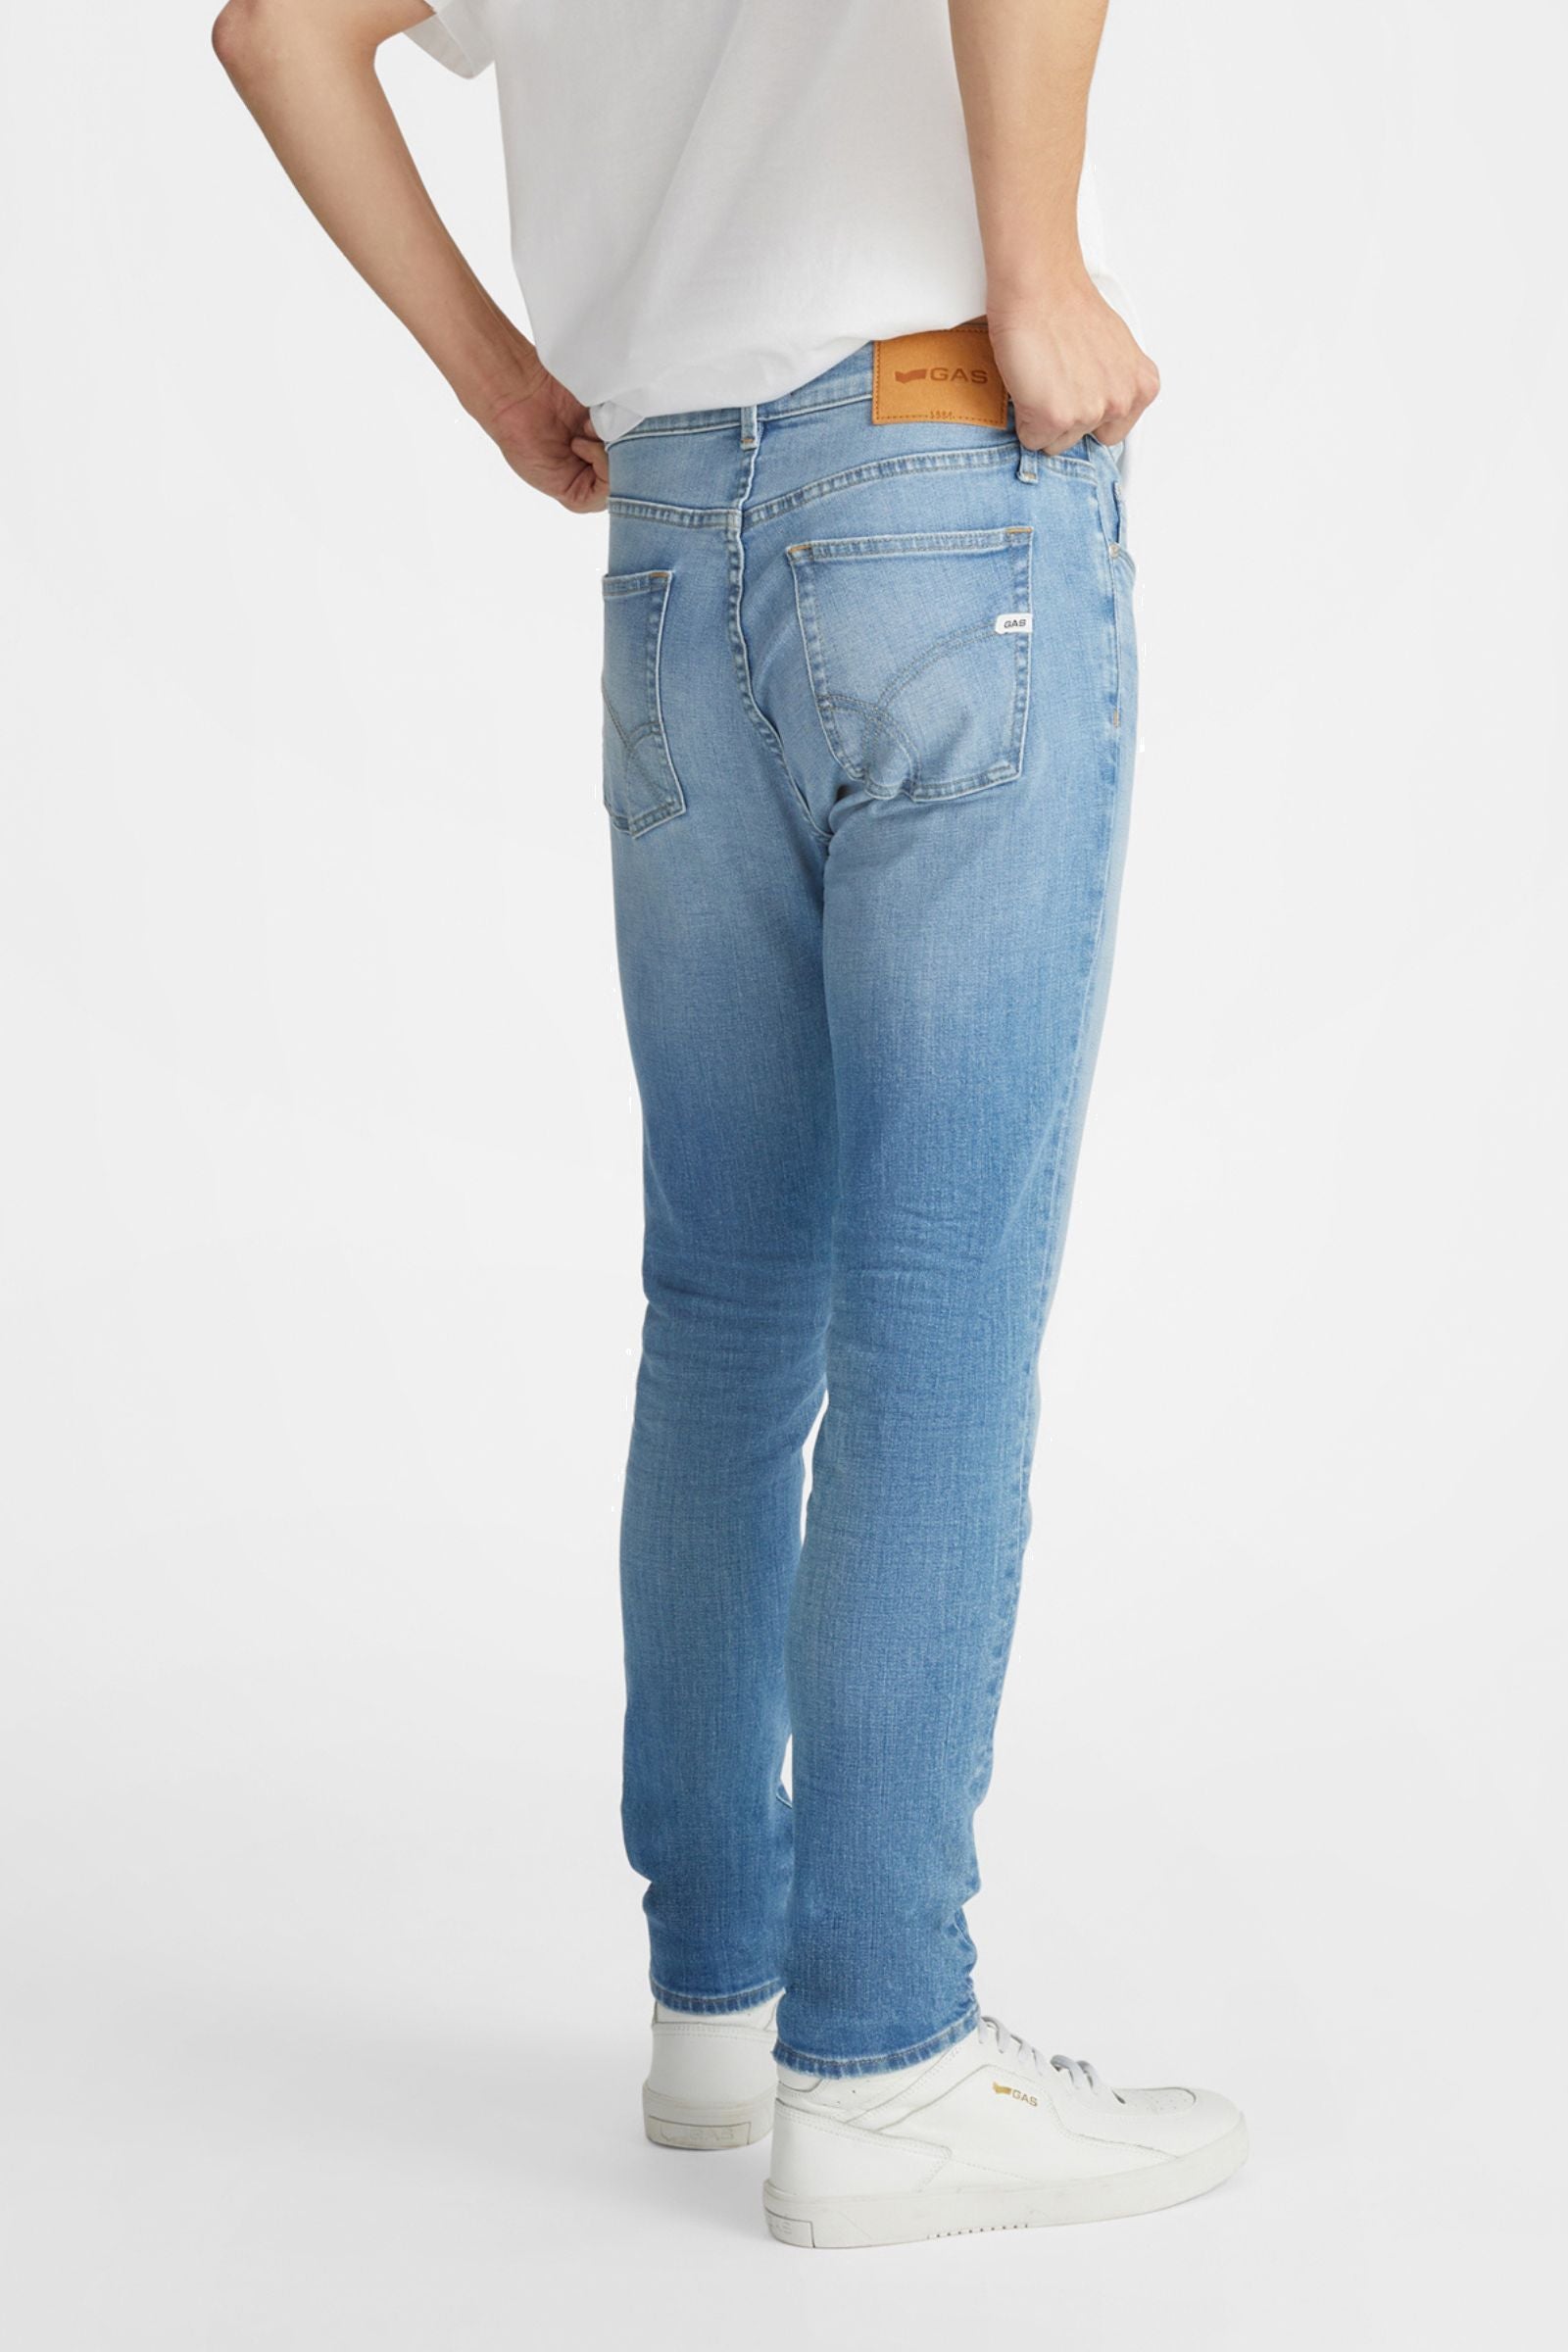 Sax Zip Rev 5 Pocket in Light Medium Jeans GAS   